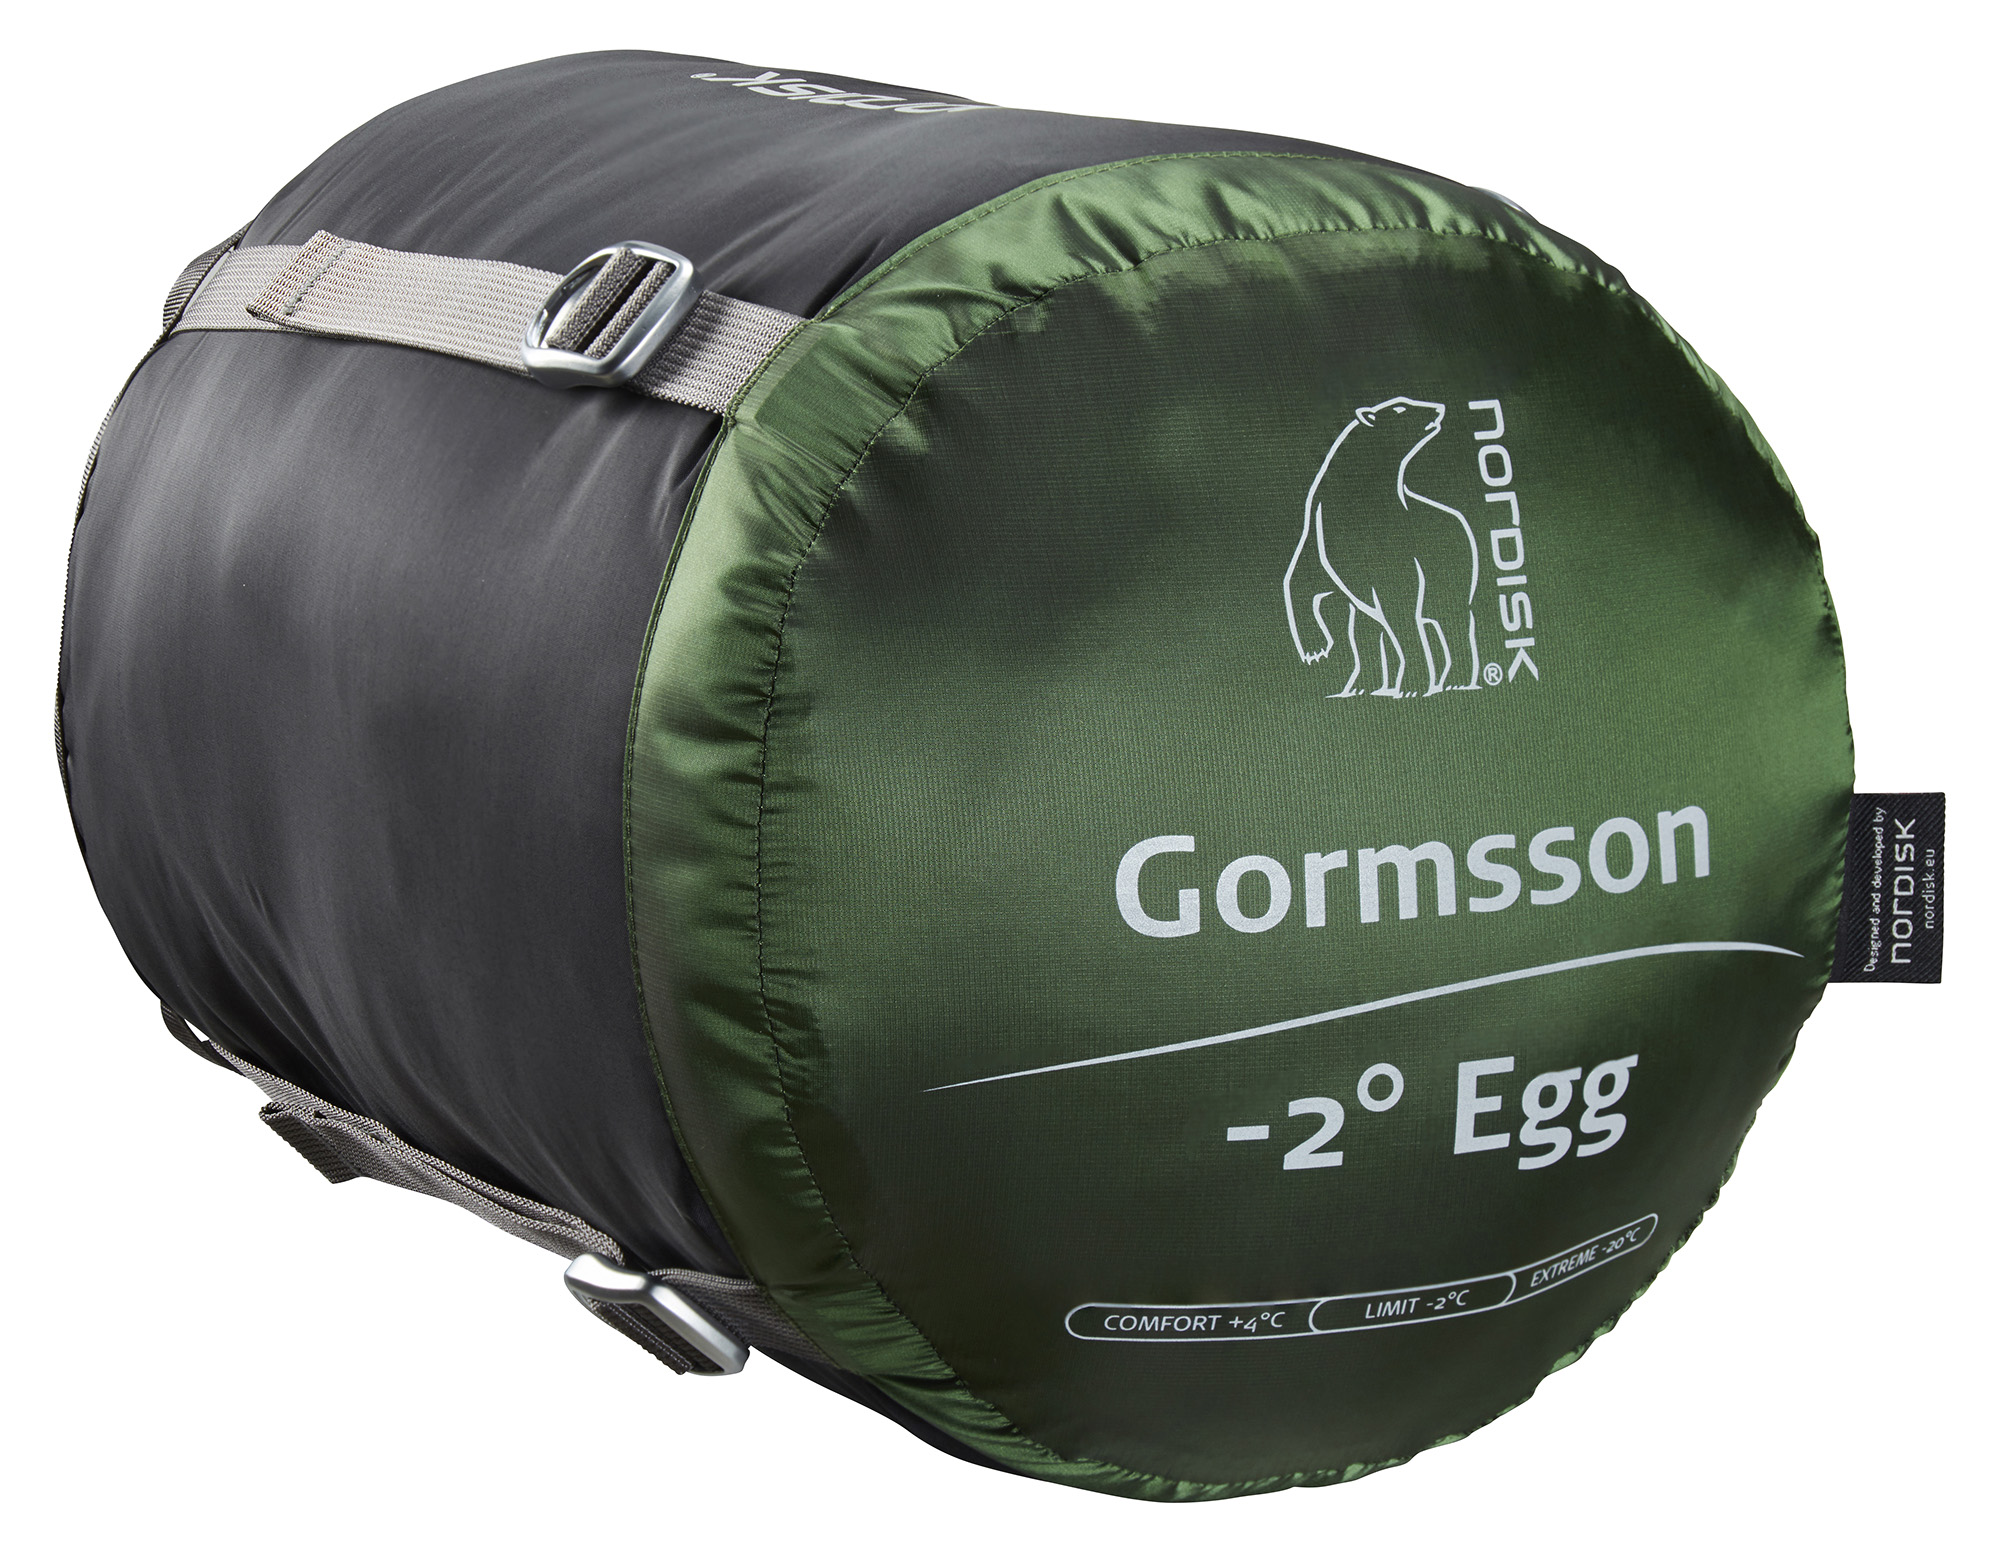 Gormsson -2° Egg